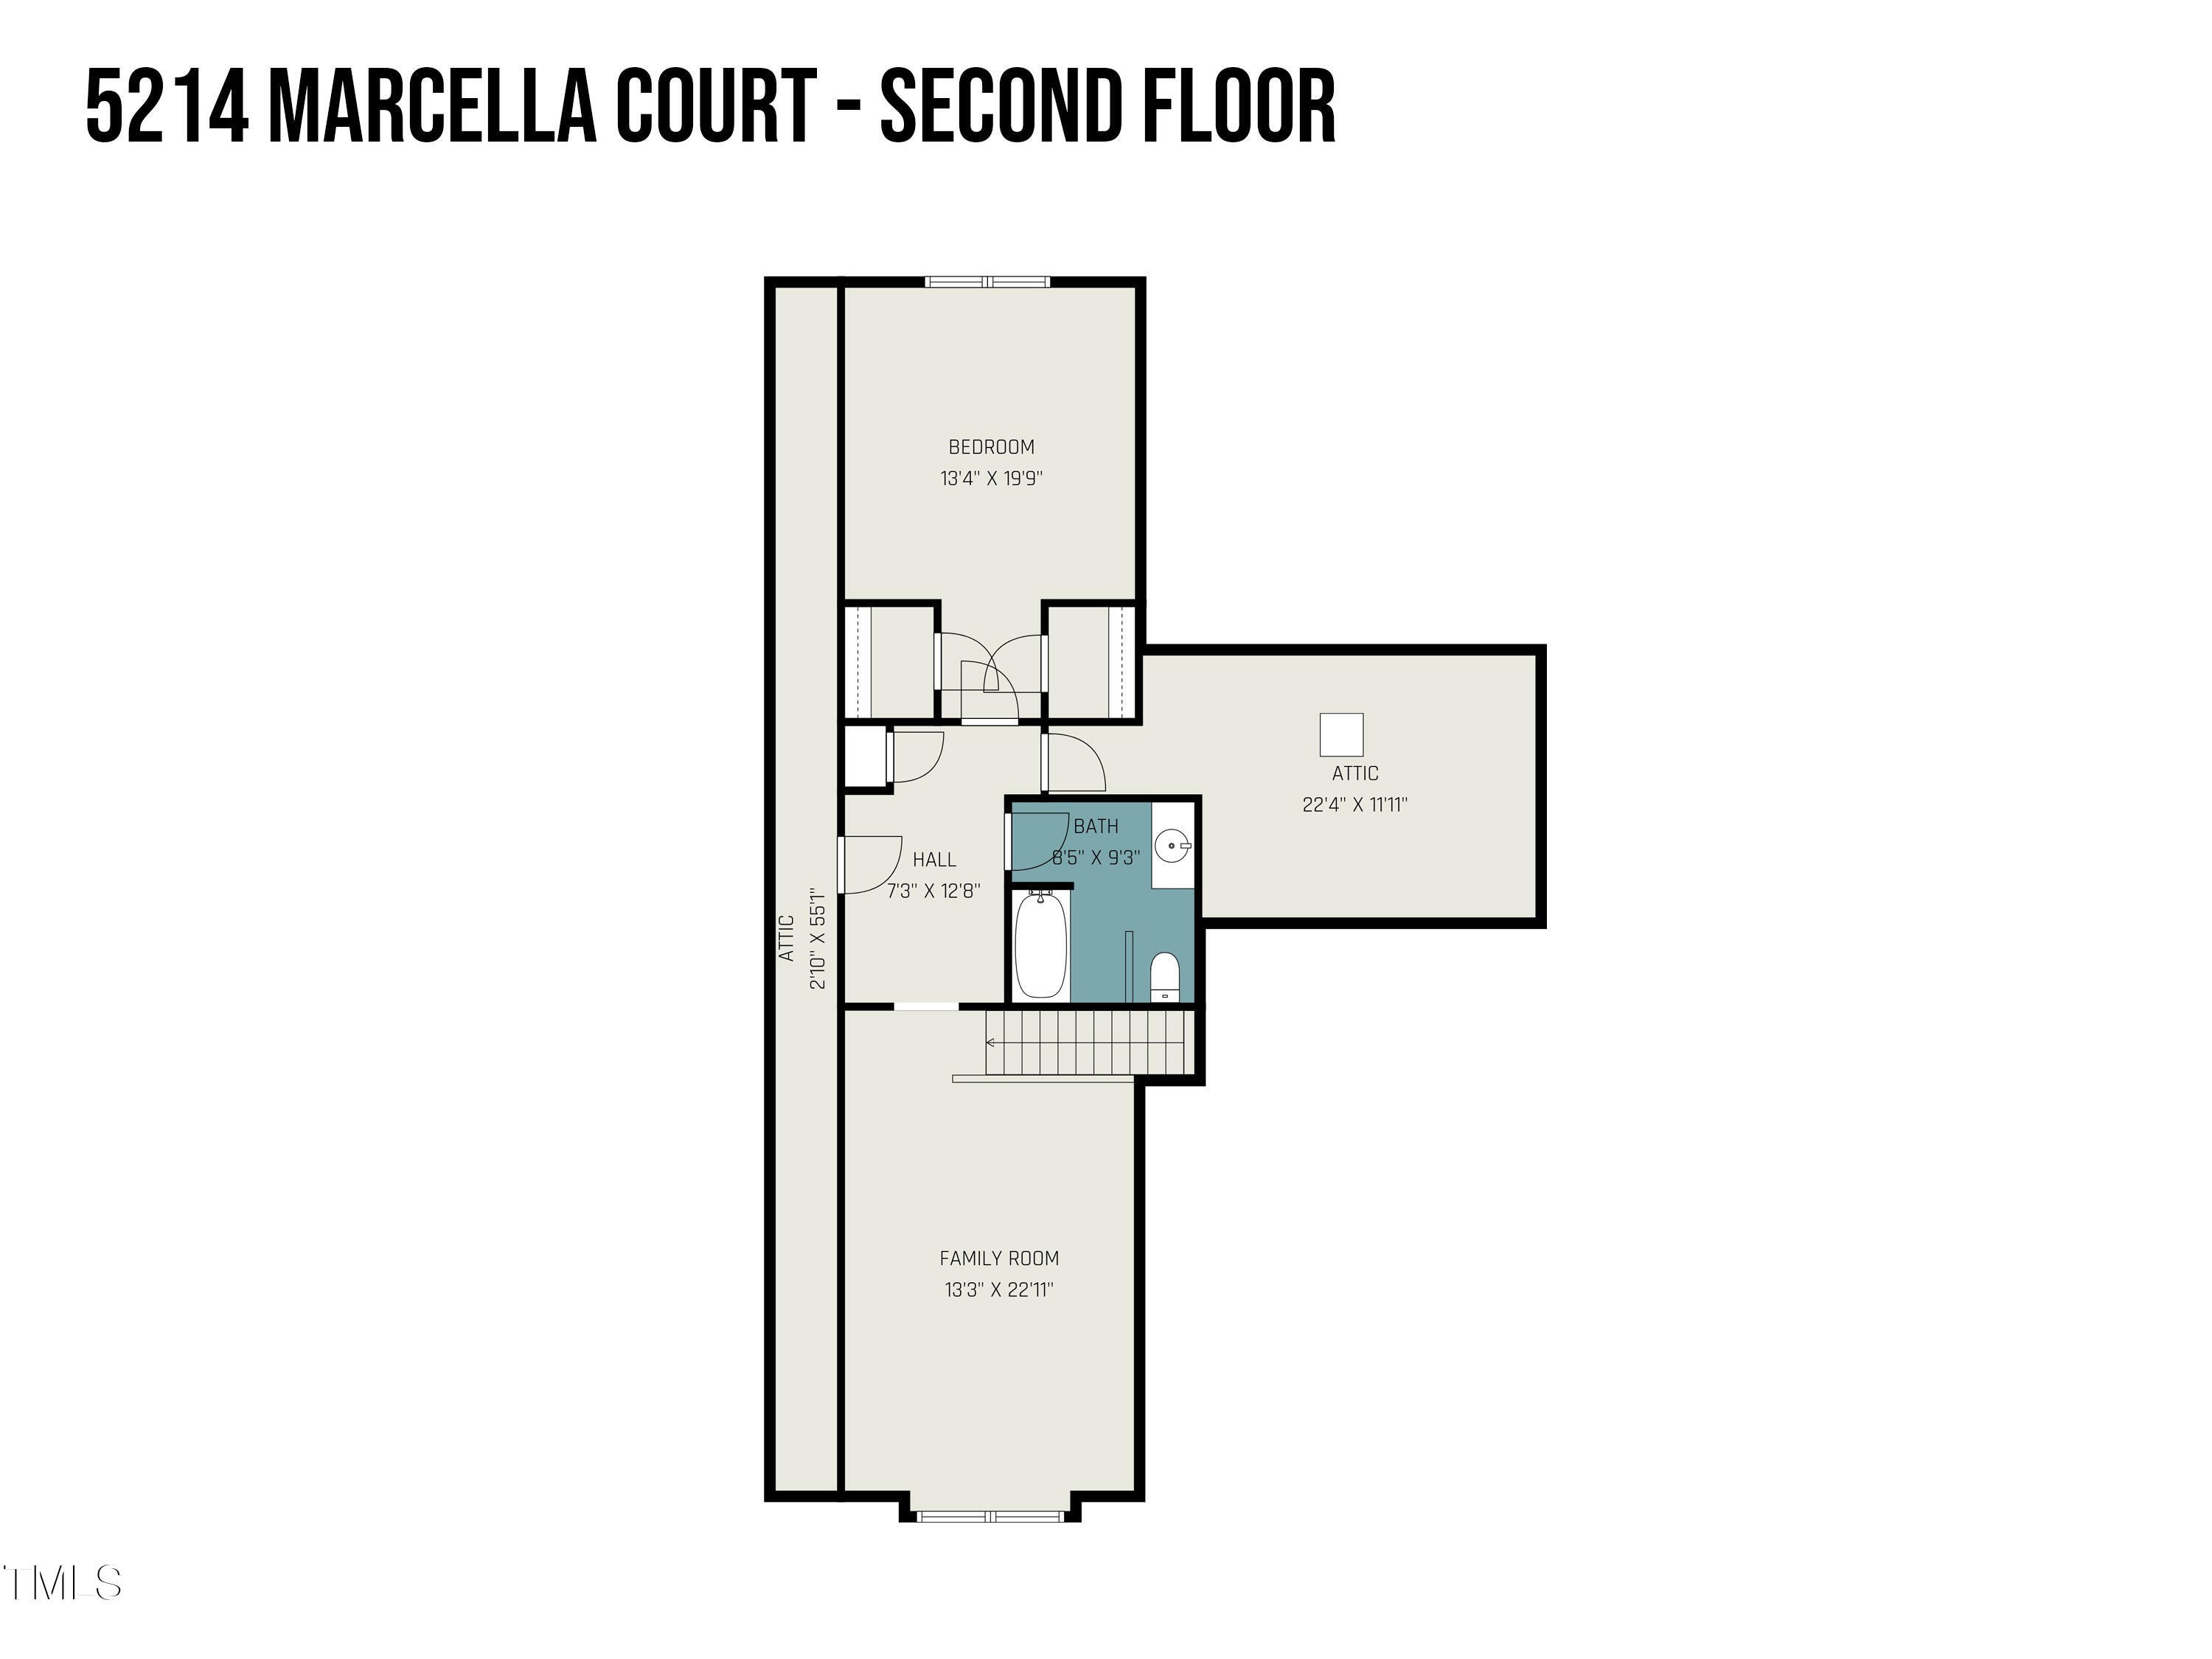 27. 5214 Marcella Court